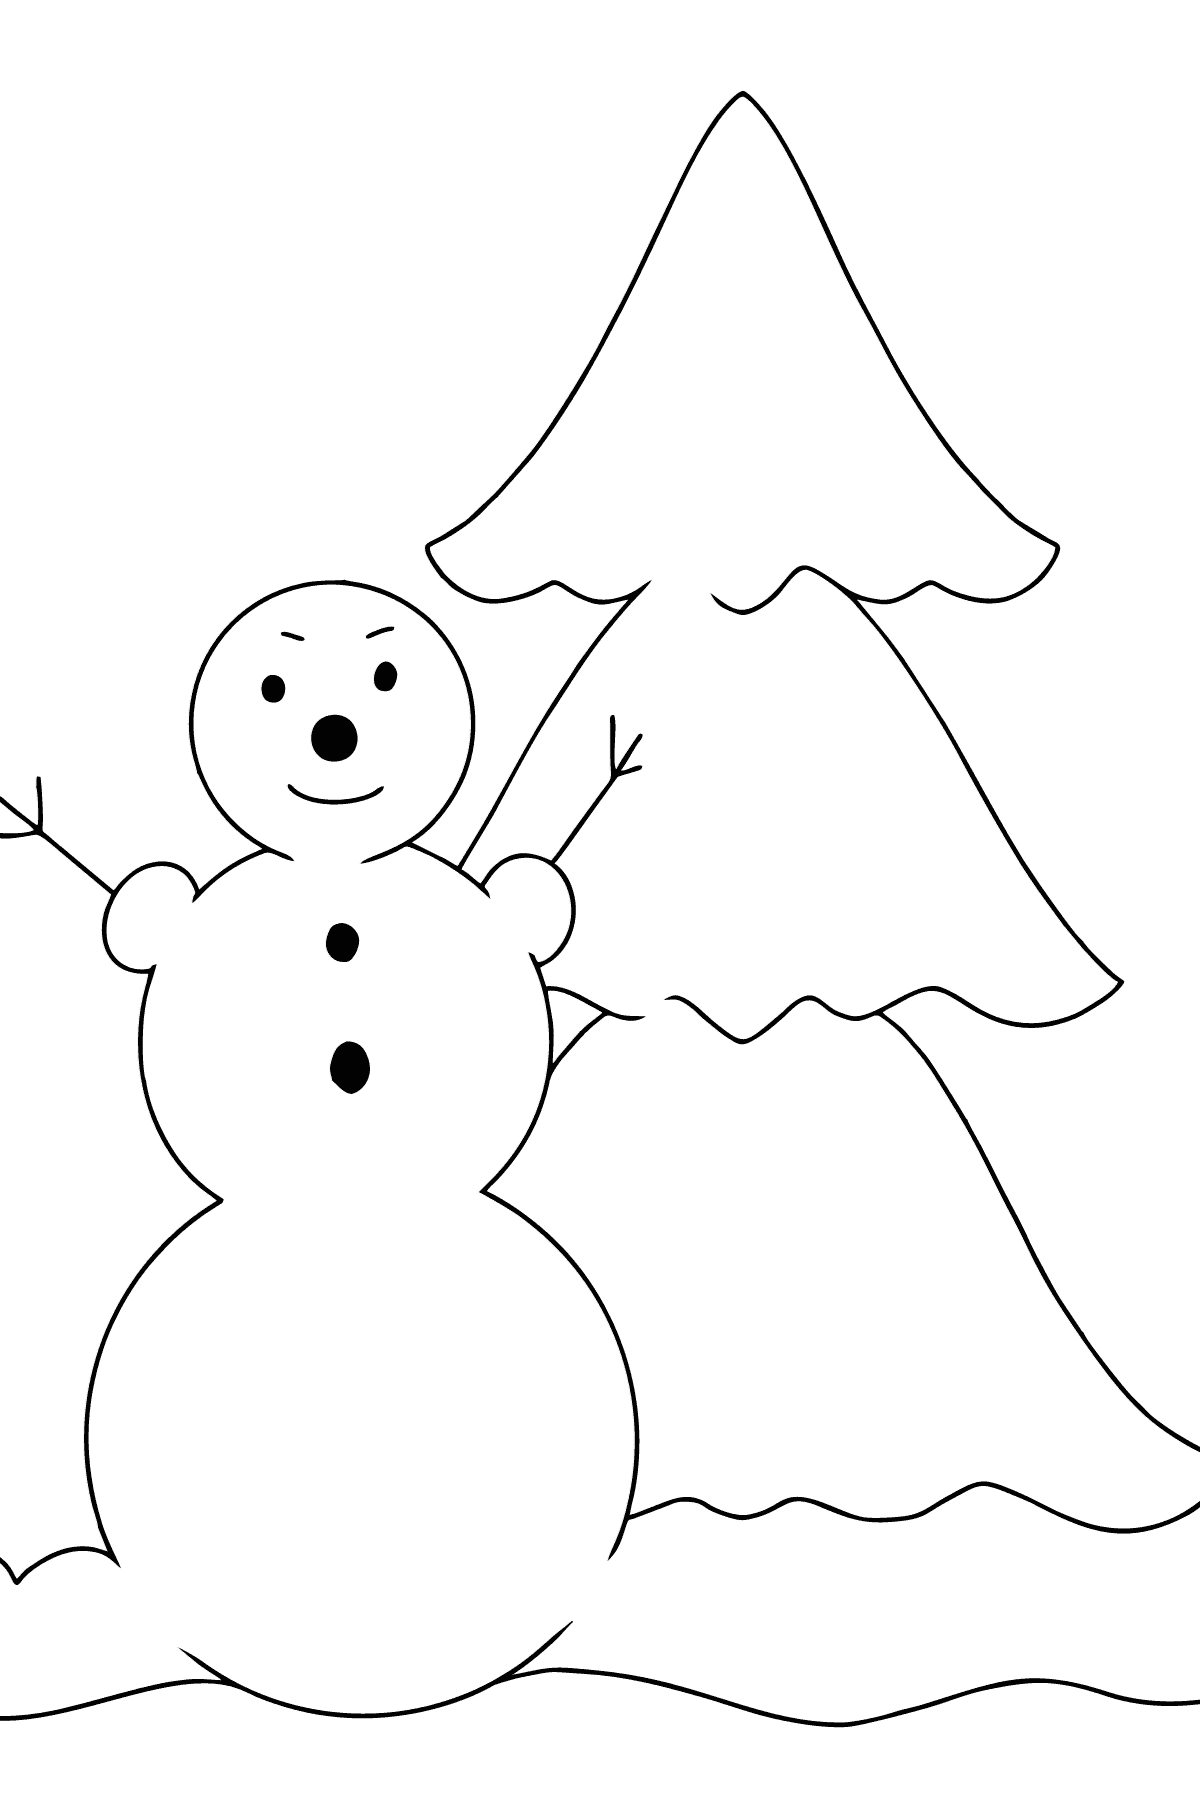 Tegning til farvning snemand og træ (let) - Tegninger til farvelægning for børn